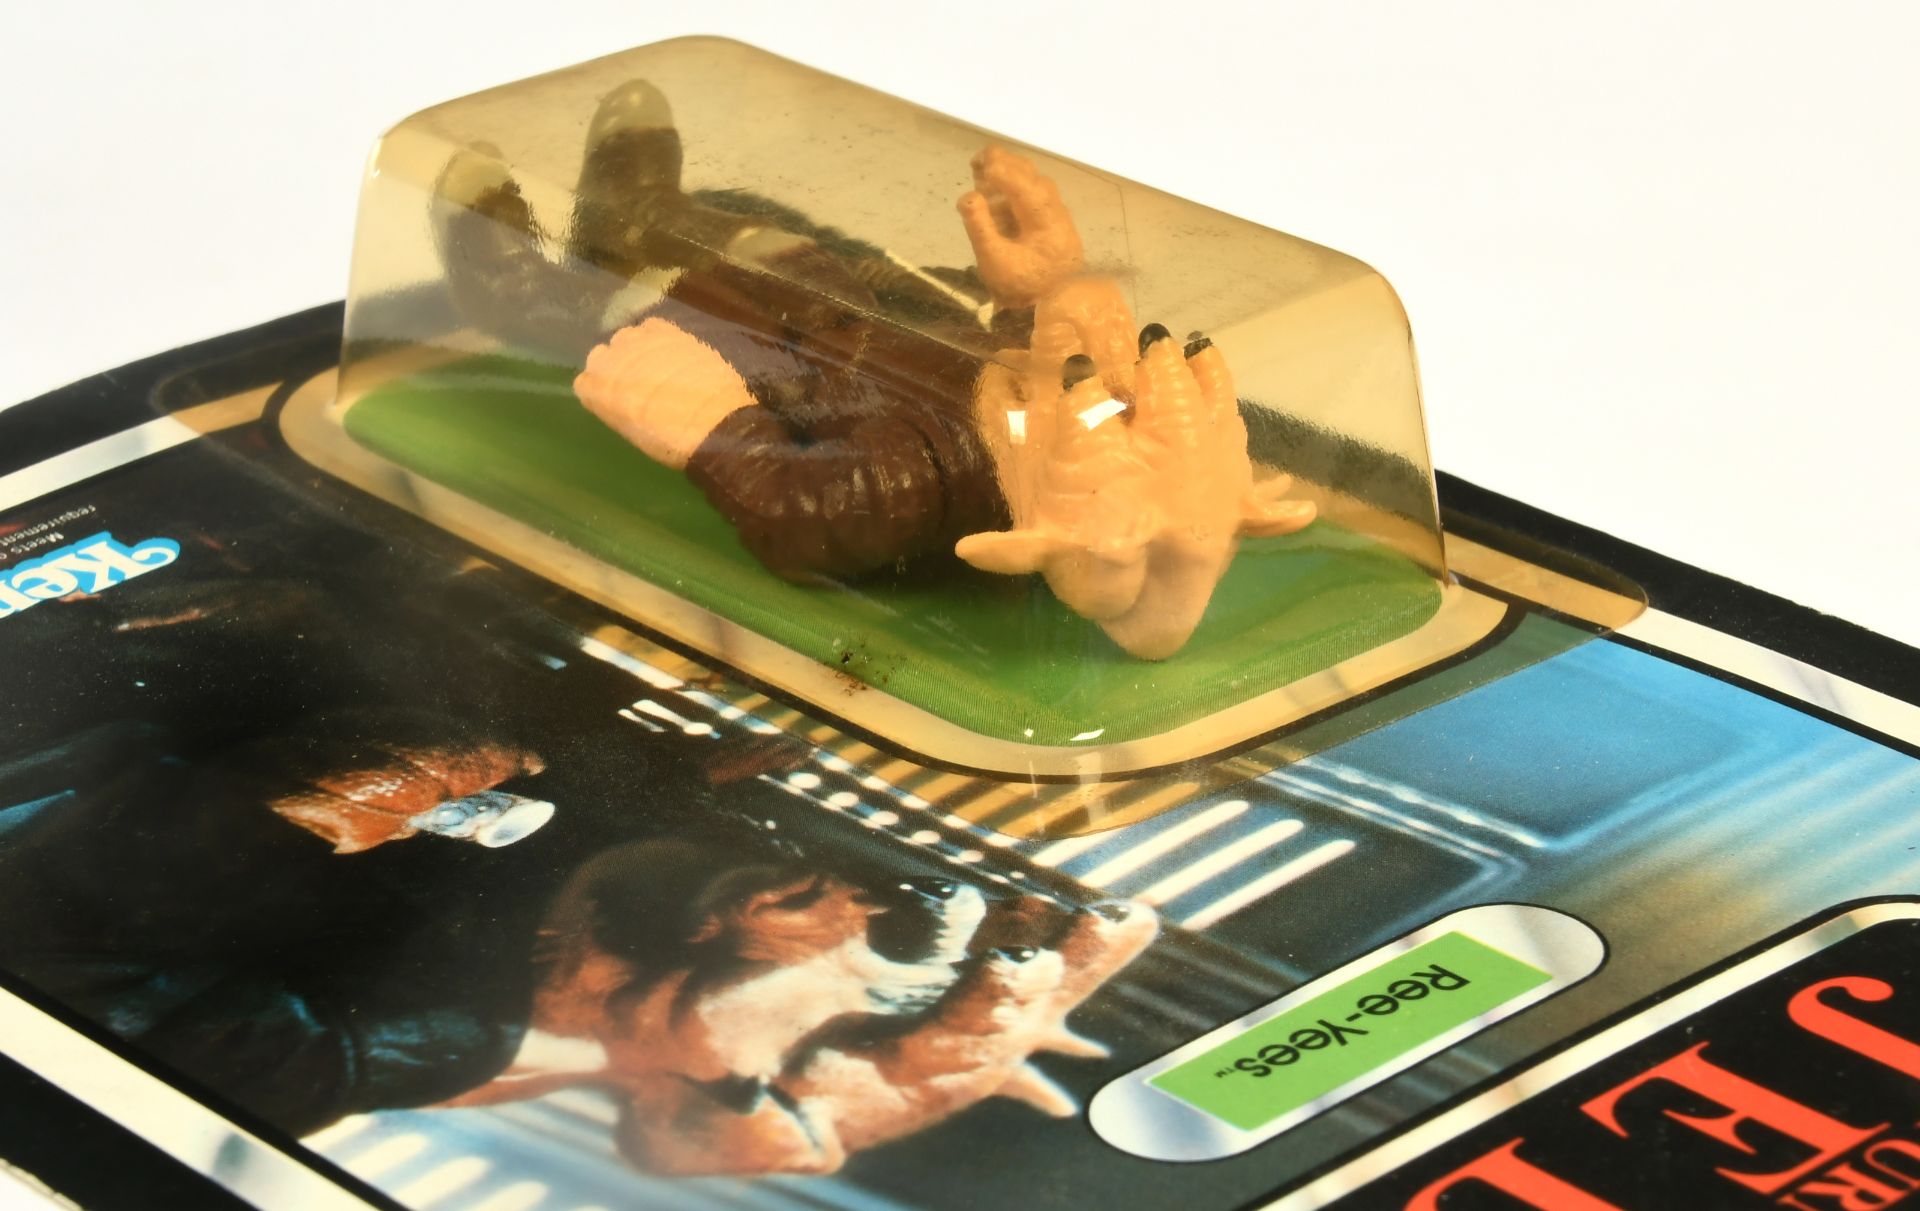 Kenner Star Wars vintage Return of the Jedi Ree-Yees 3 3/4" figure - Image 4 of 4